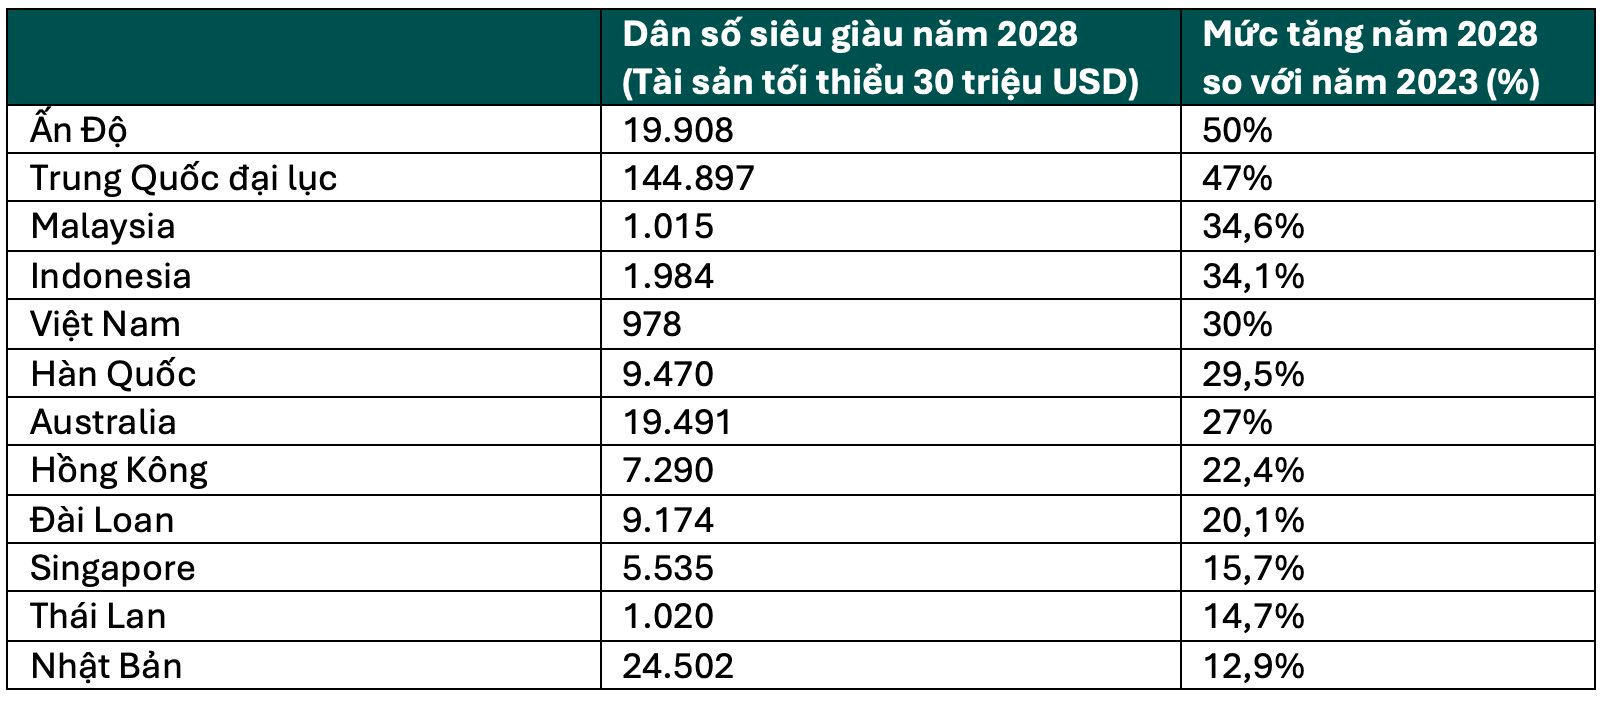 Có 752 người siêu giàu với tốc độ tăng trưởng gấp 3 Thái Lan, Việt Nam thành miền đất hứa 'dụ' loạt thương hiệu xa xỉ Cartier, Longines, Bertazzoni… ồ ạt “đổ bộ”- Ảnh 2.